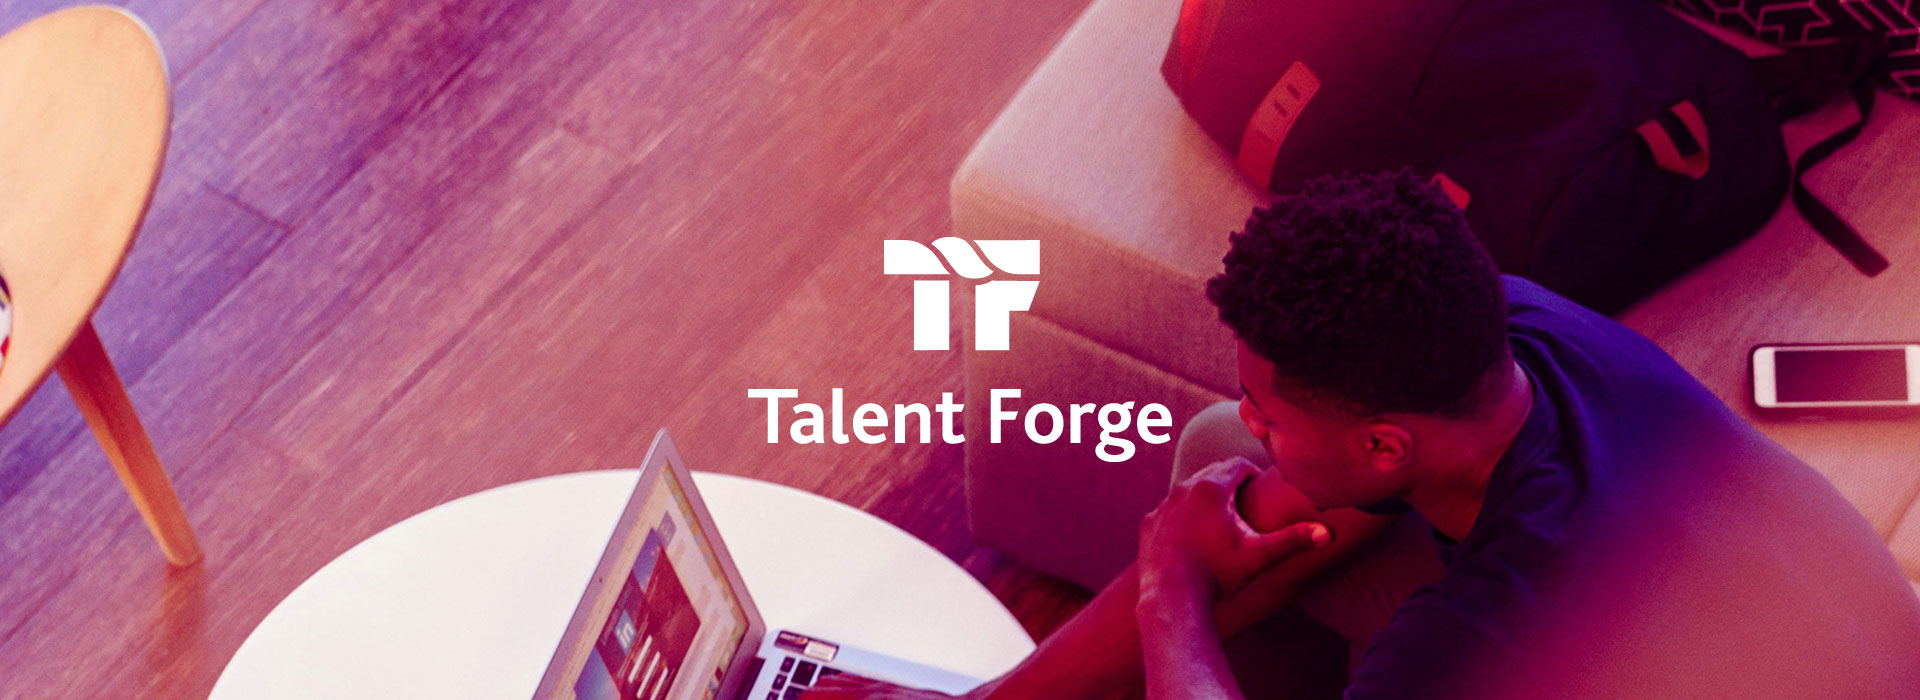 talent forge header v2 web